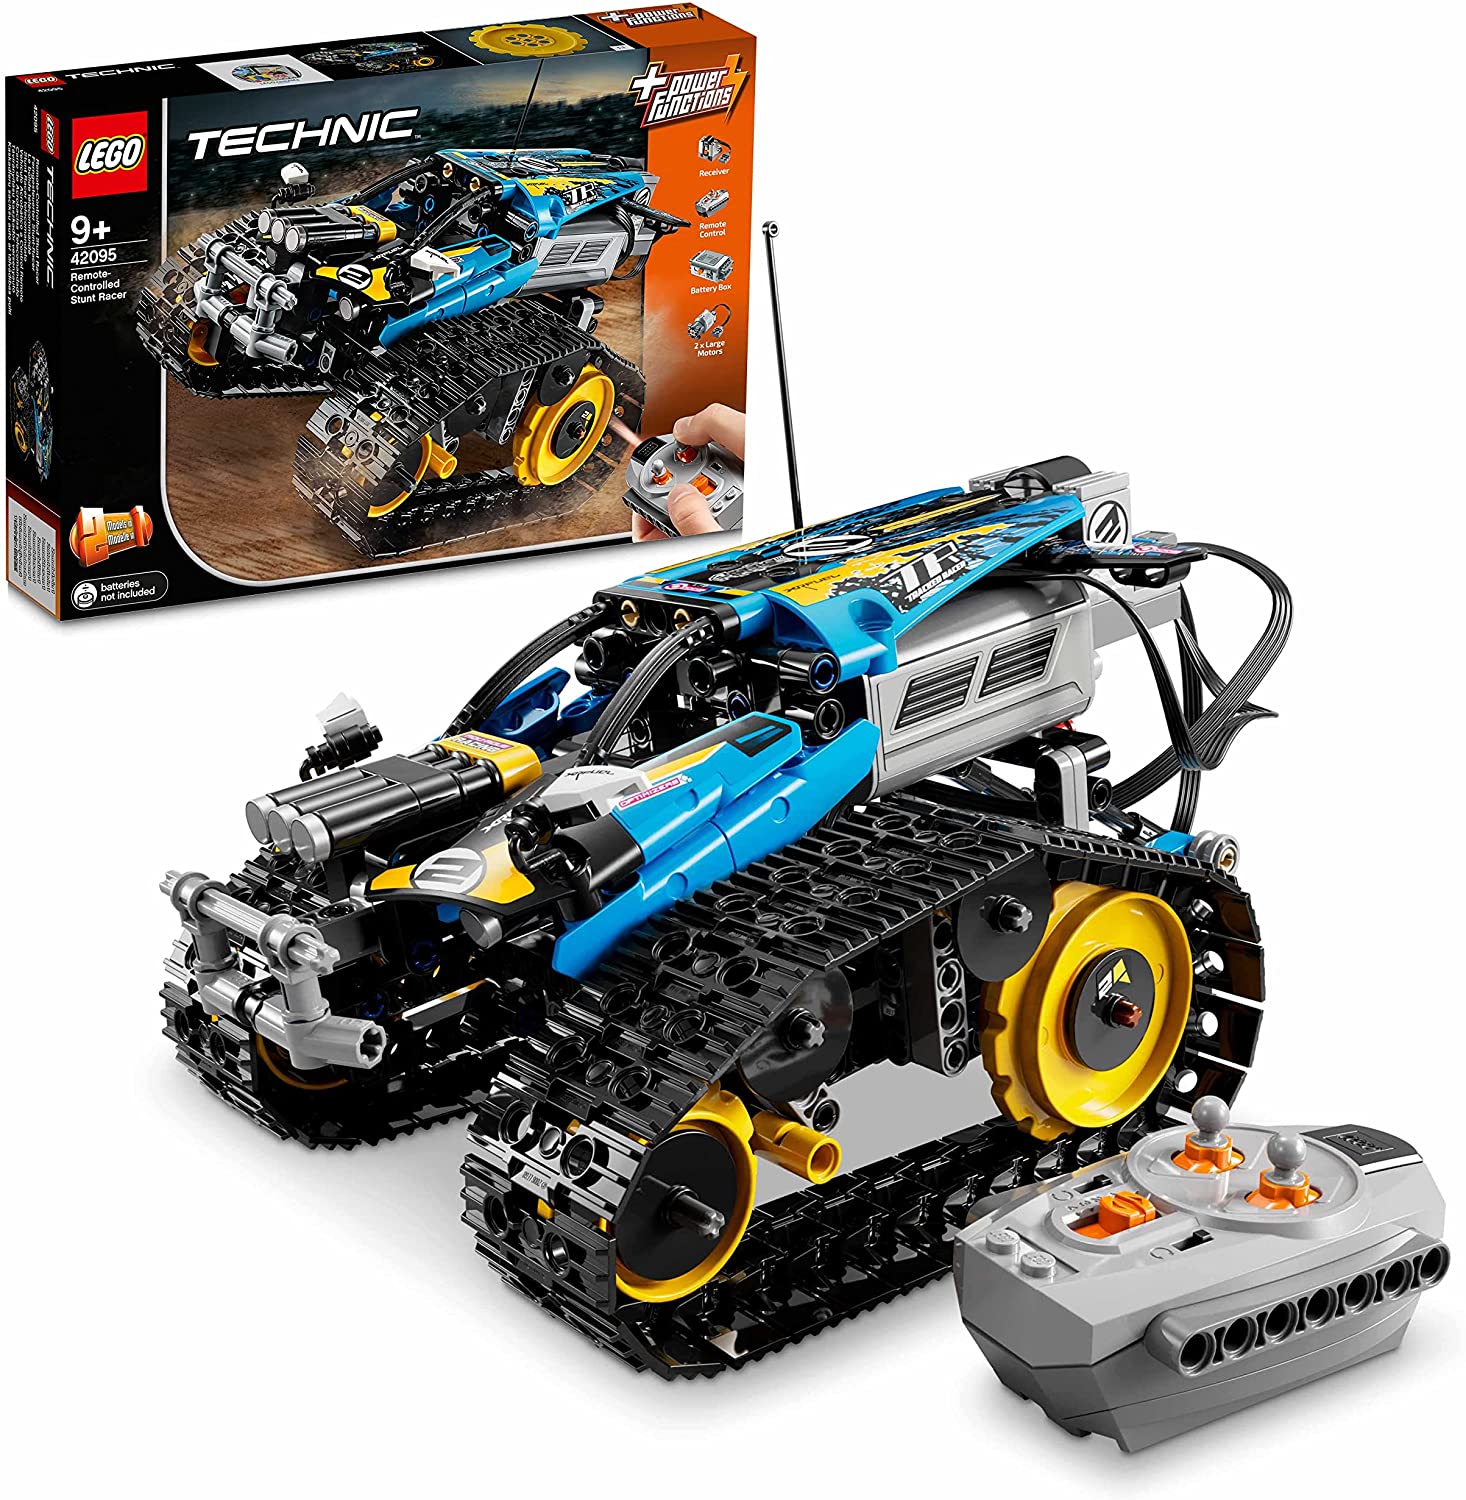 Bild zu [vorbei] Lego Technic Ferngesteuerter Stunt-Racer (42095) für 54,90€ (Vergleich: 65,94€)